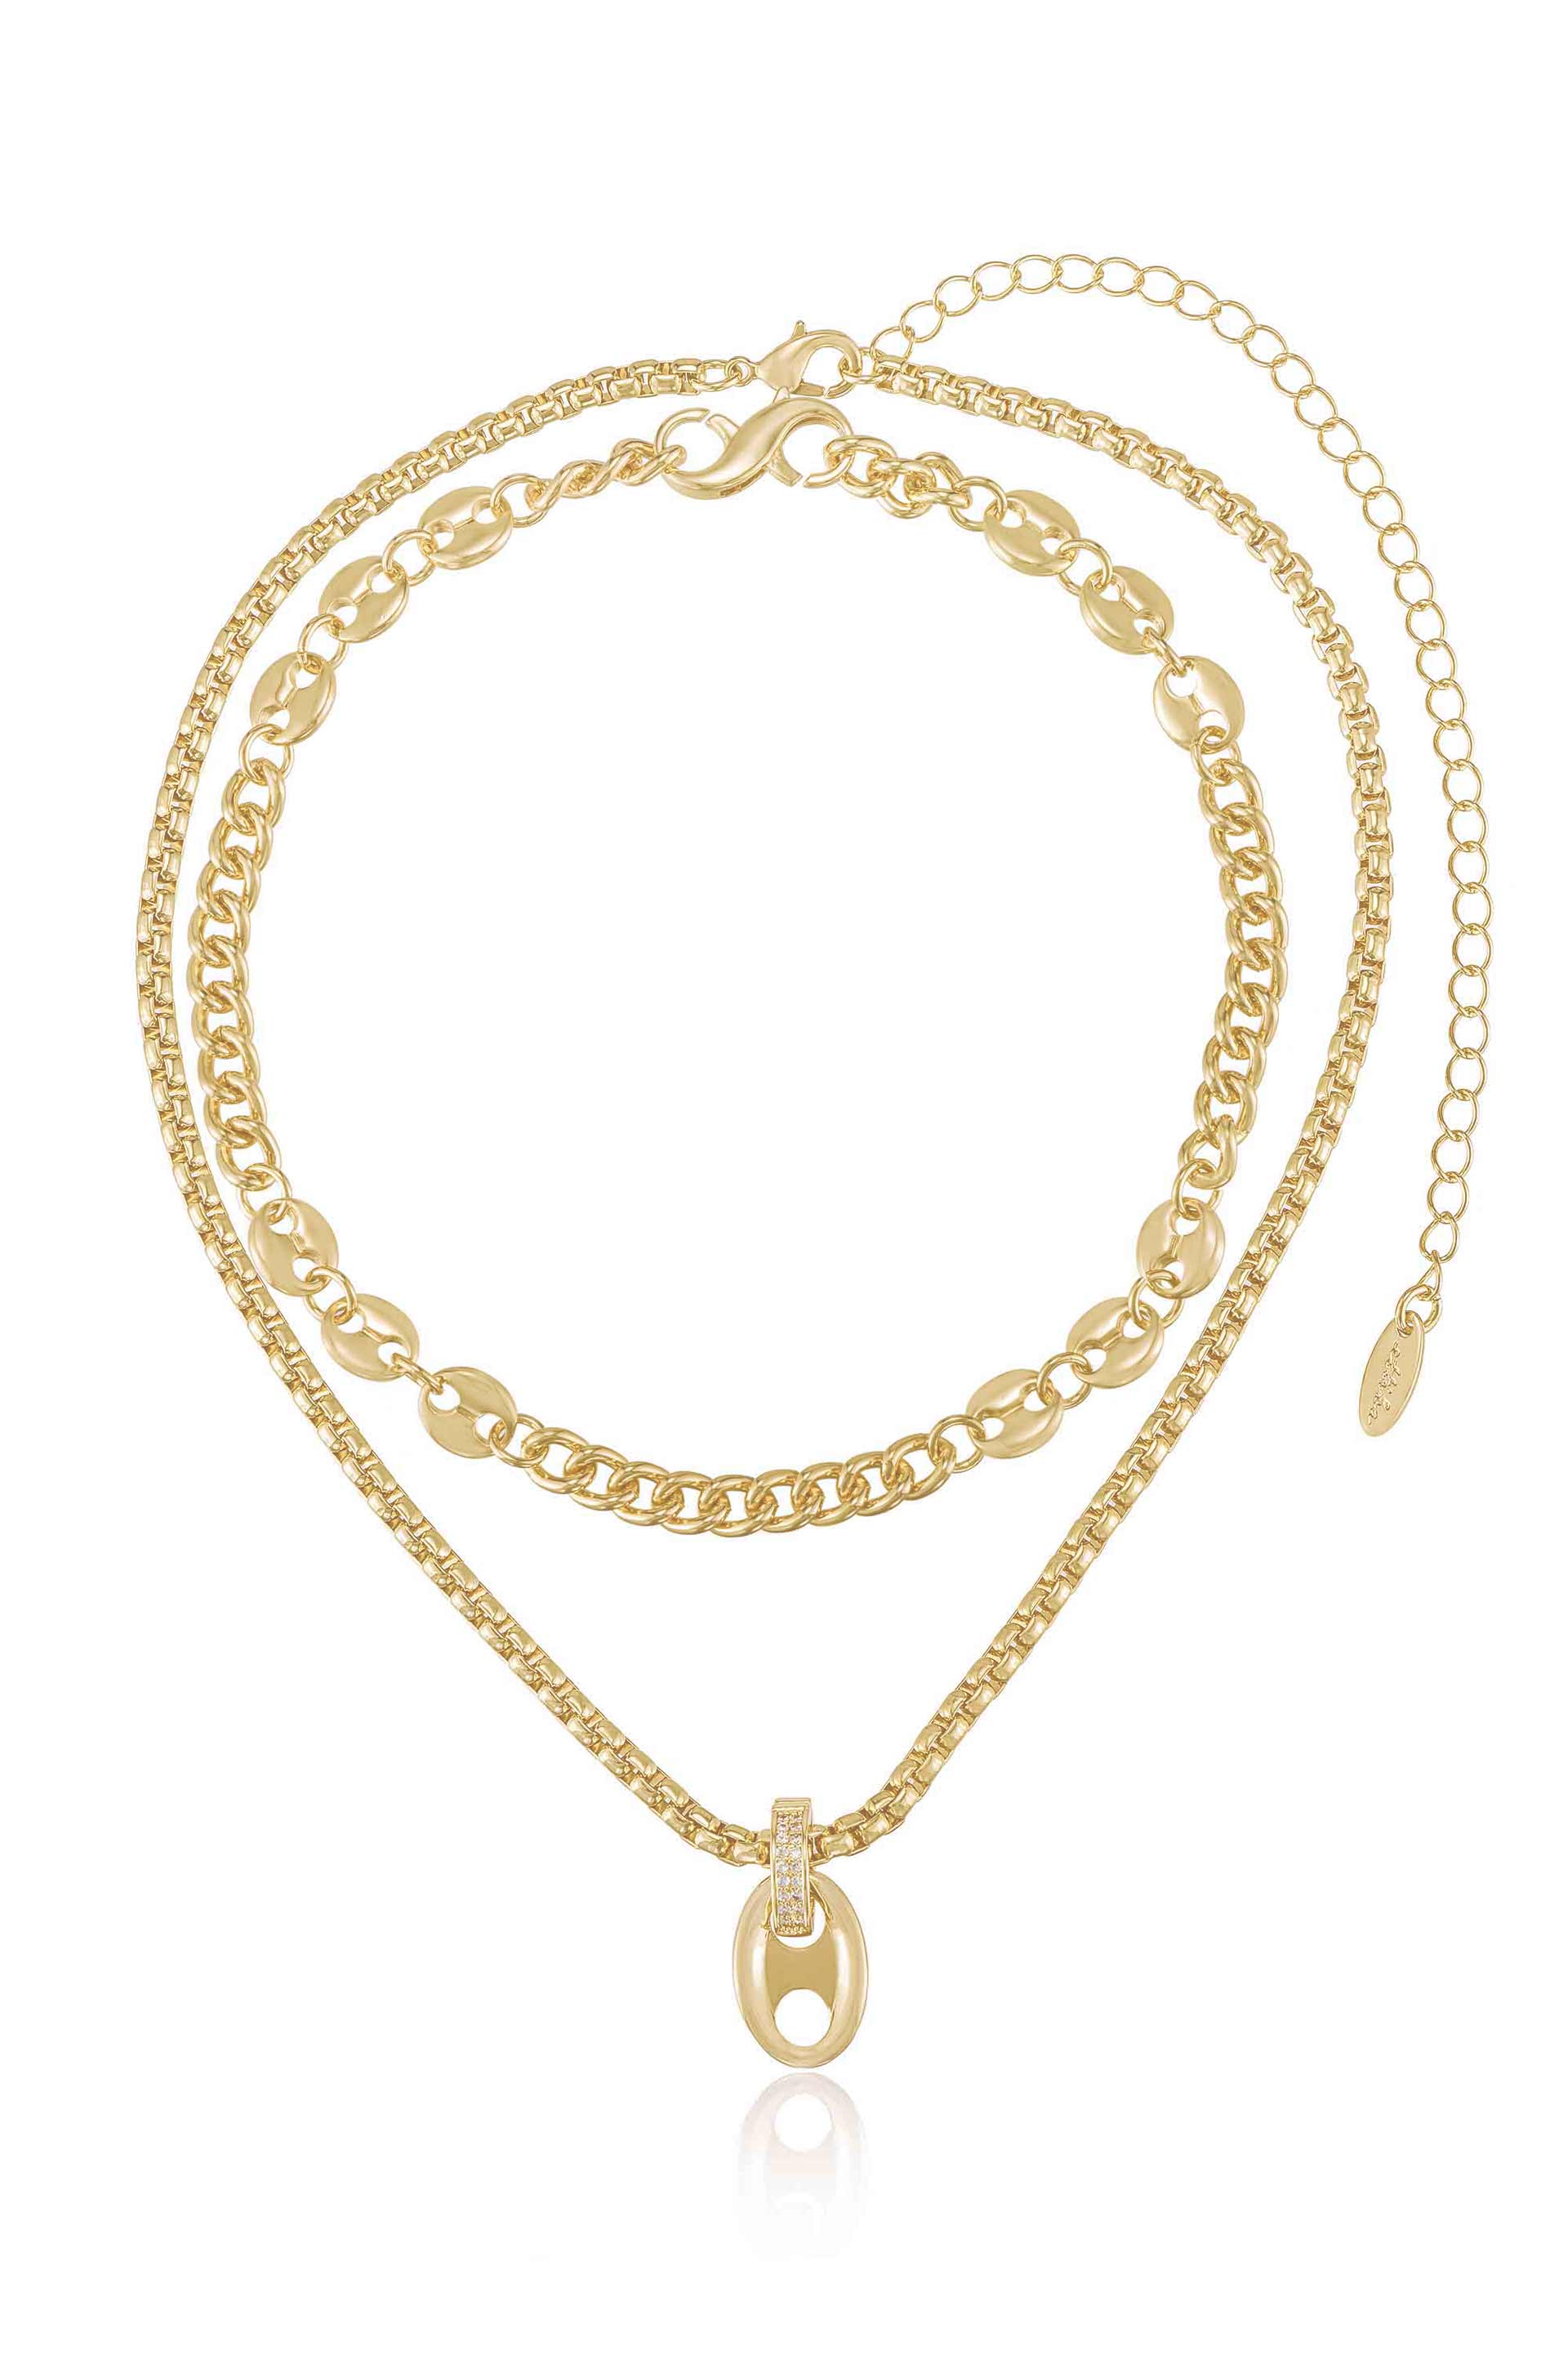 Modern Golden Girl 18k Gold Plated Necklace Set full